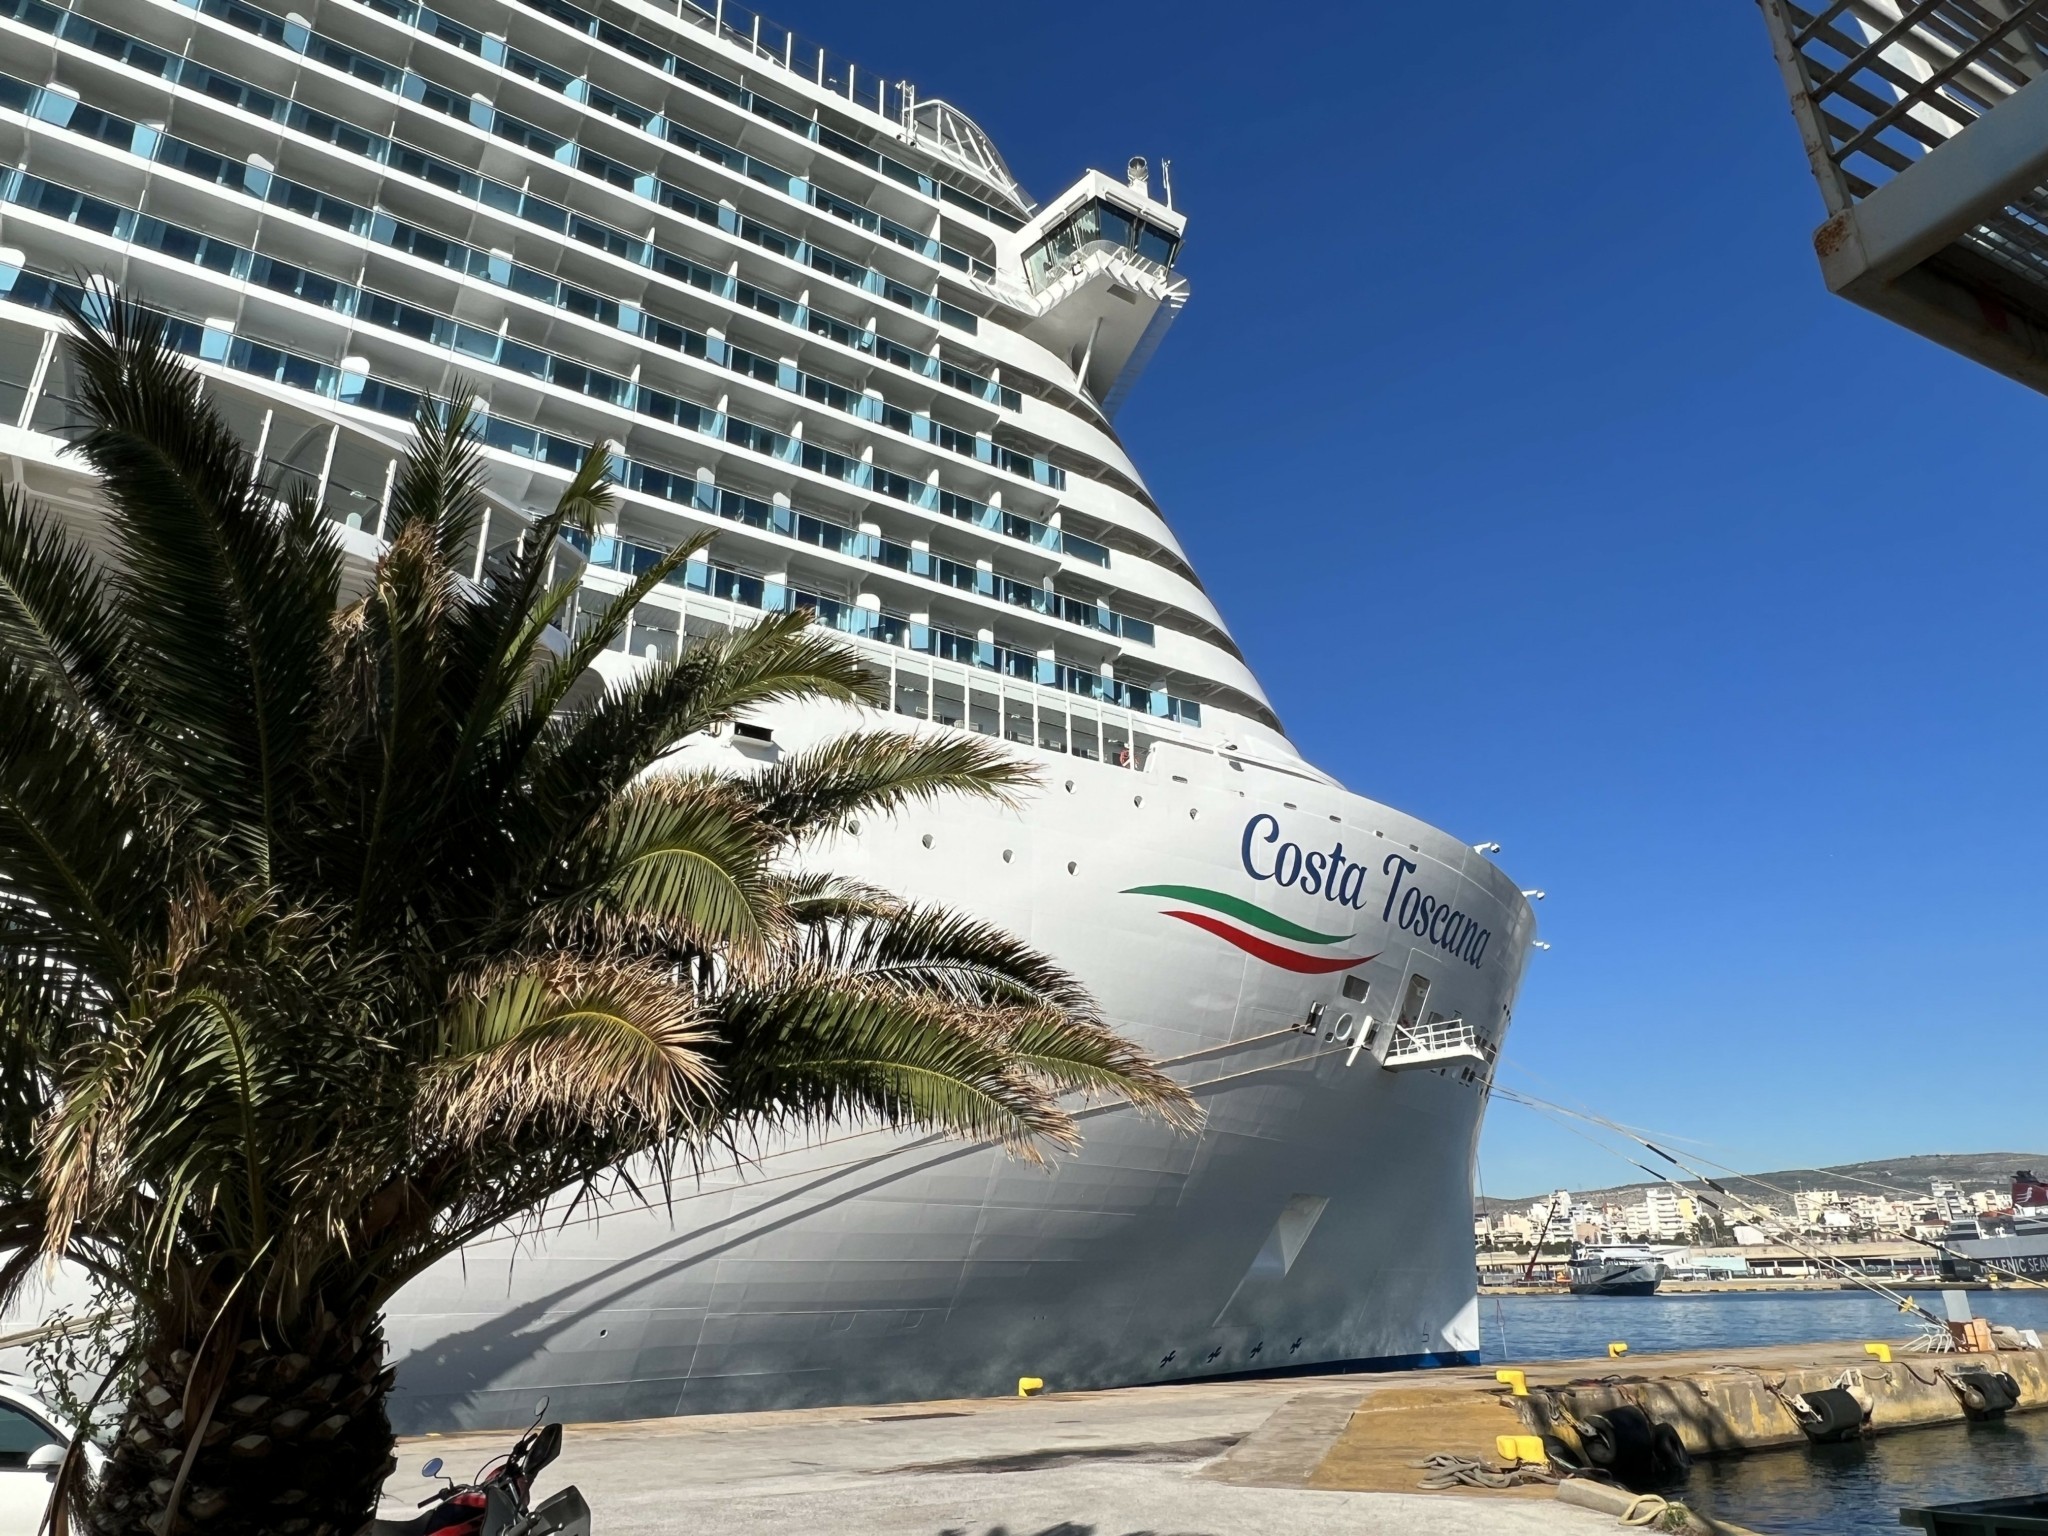 Ξενάγηση στο Costa Toscana που κατέπλευσε για πρώτη φορά στο λιμάνι του Πειραιά με προορισμό το Ντουμπάι (pics)